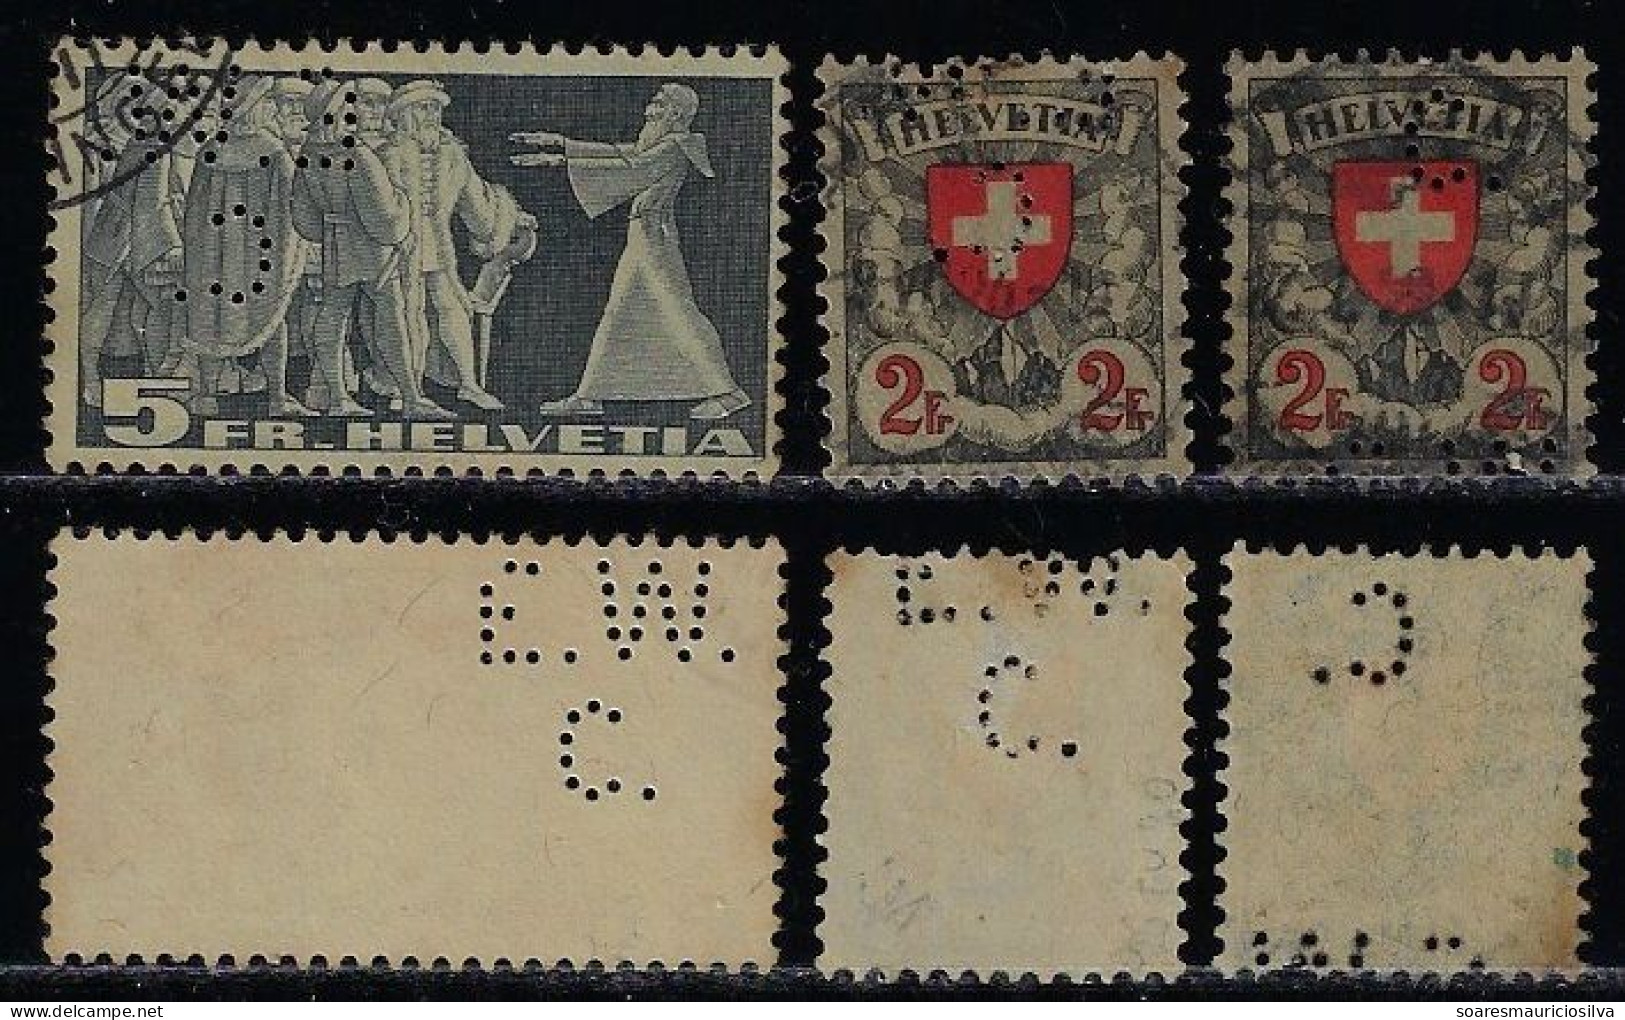 Switzerland 1894/1940 3 Stamp With Perfin E.W./C. By Escher-Wyss & Co Machine Factory In Zurich Lochung Perfore - Gezähnt (perforiert)